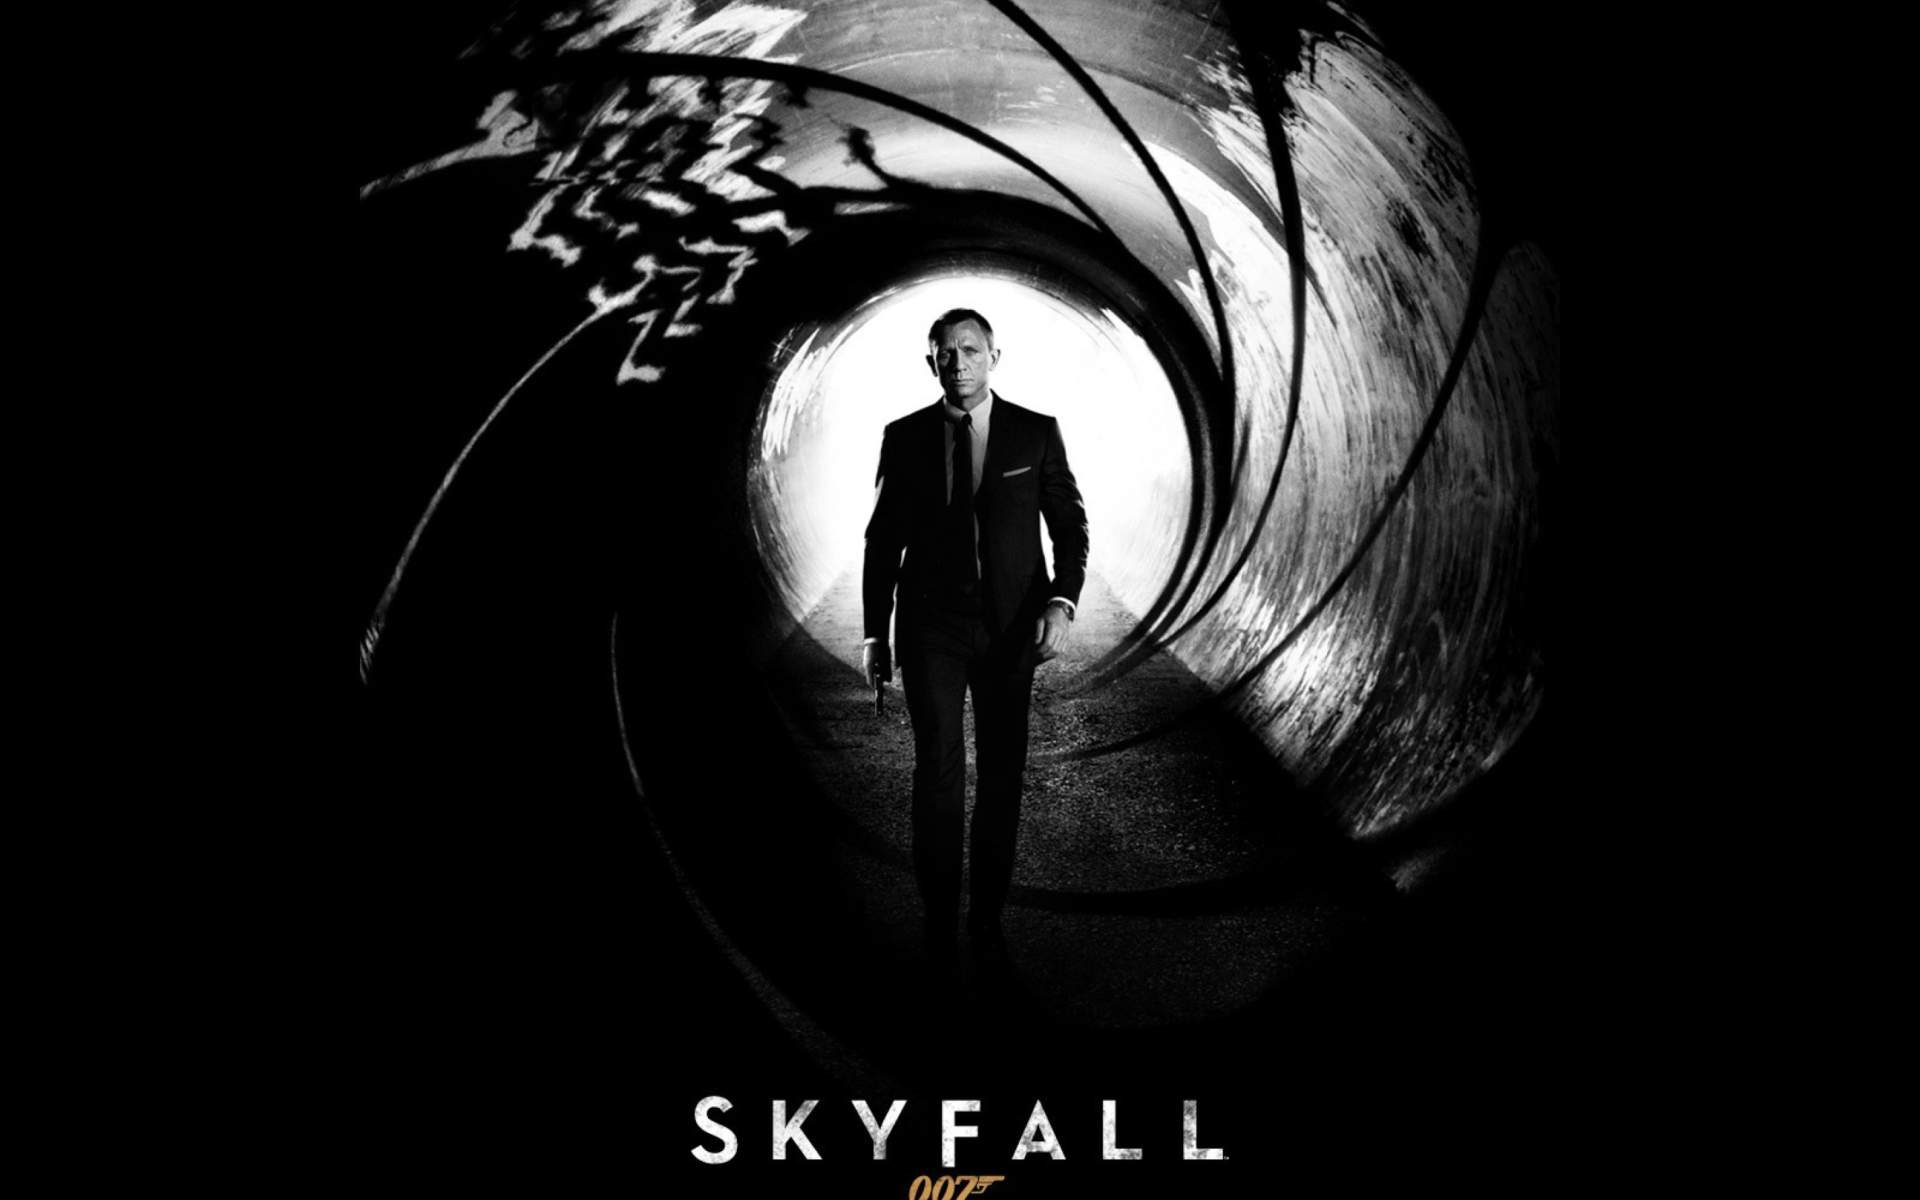 James Bond Skyfall Wallpaper For Widescreen Desktop Pc 19x1080 Full Hd